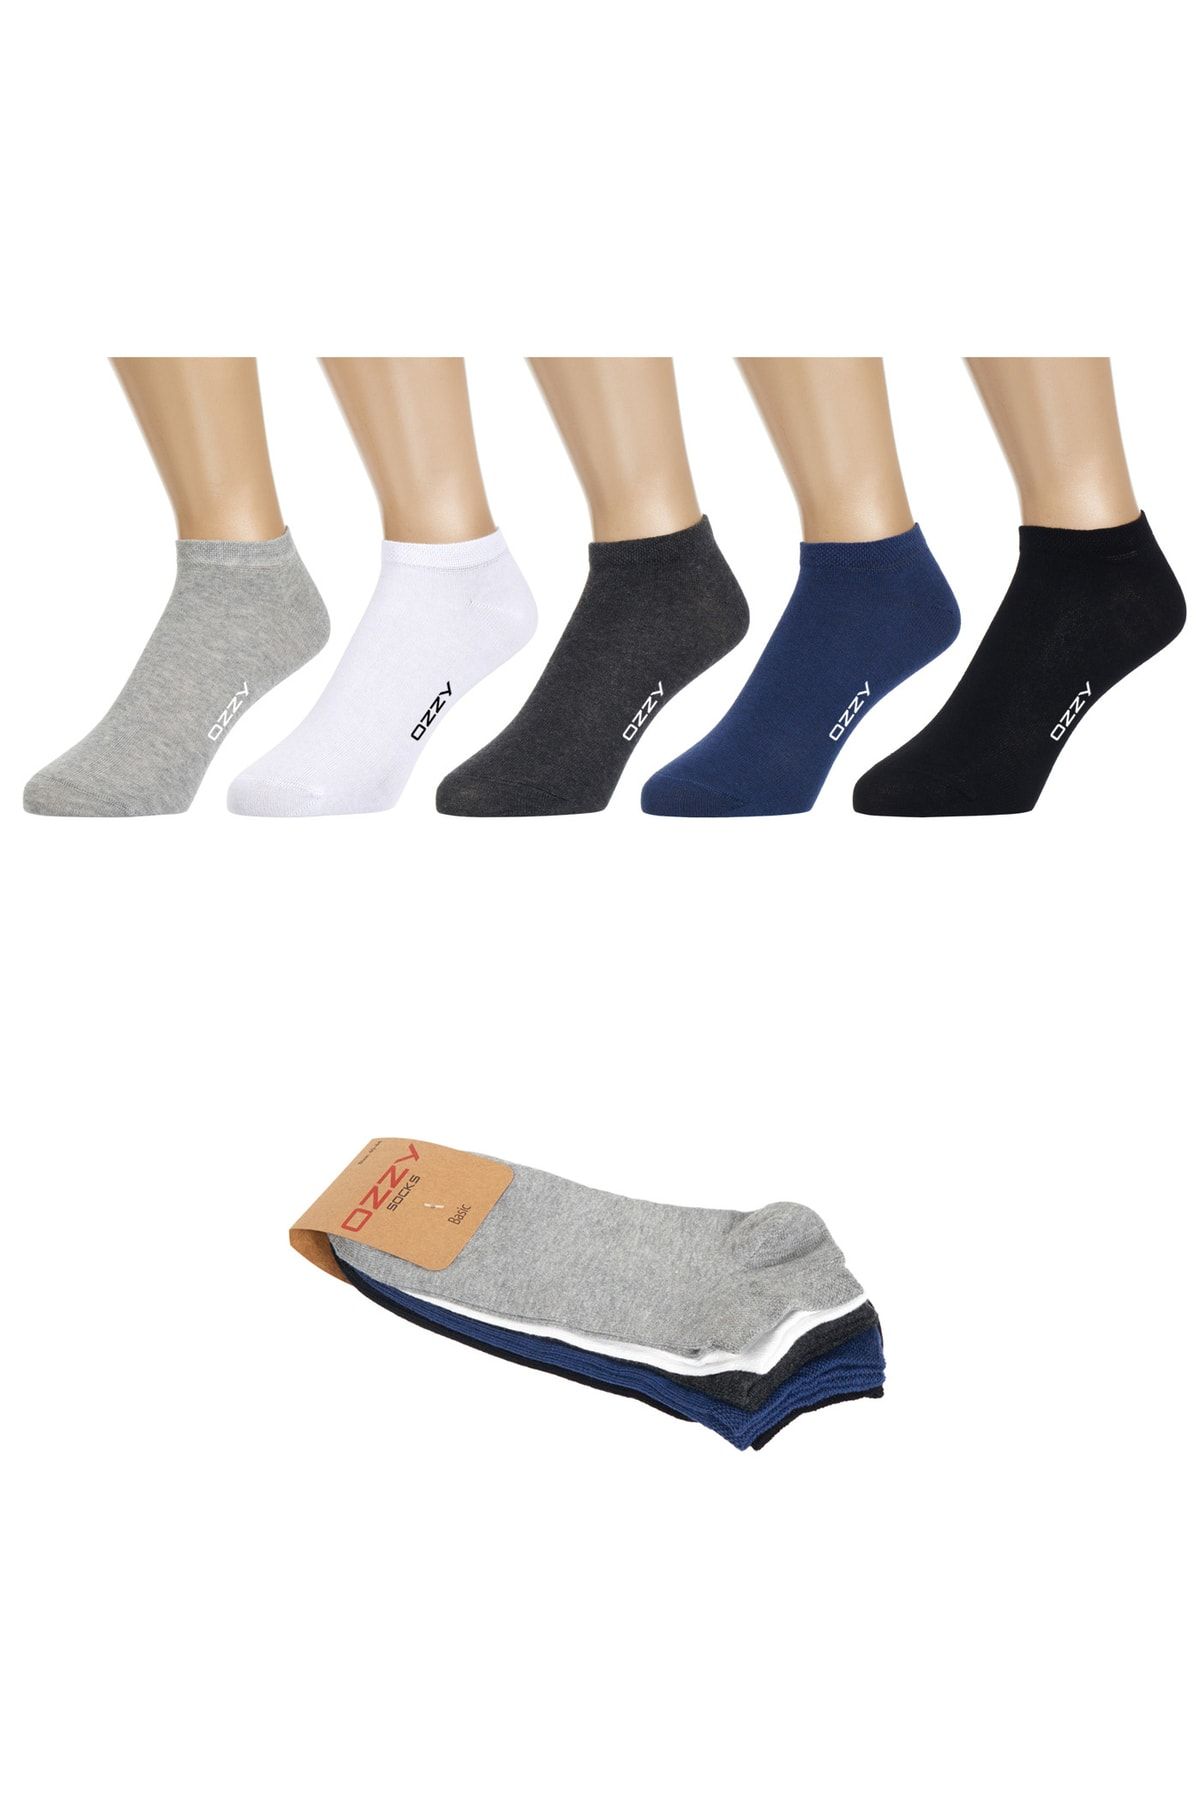 Ozzy Socks 5 Çift Dikişsiz Pamuklu Çok Renkli Patik Çorap Yazlık Dayanıklı Topuk Ve Burun